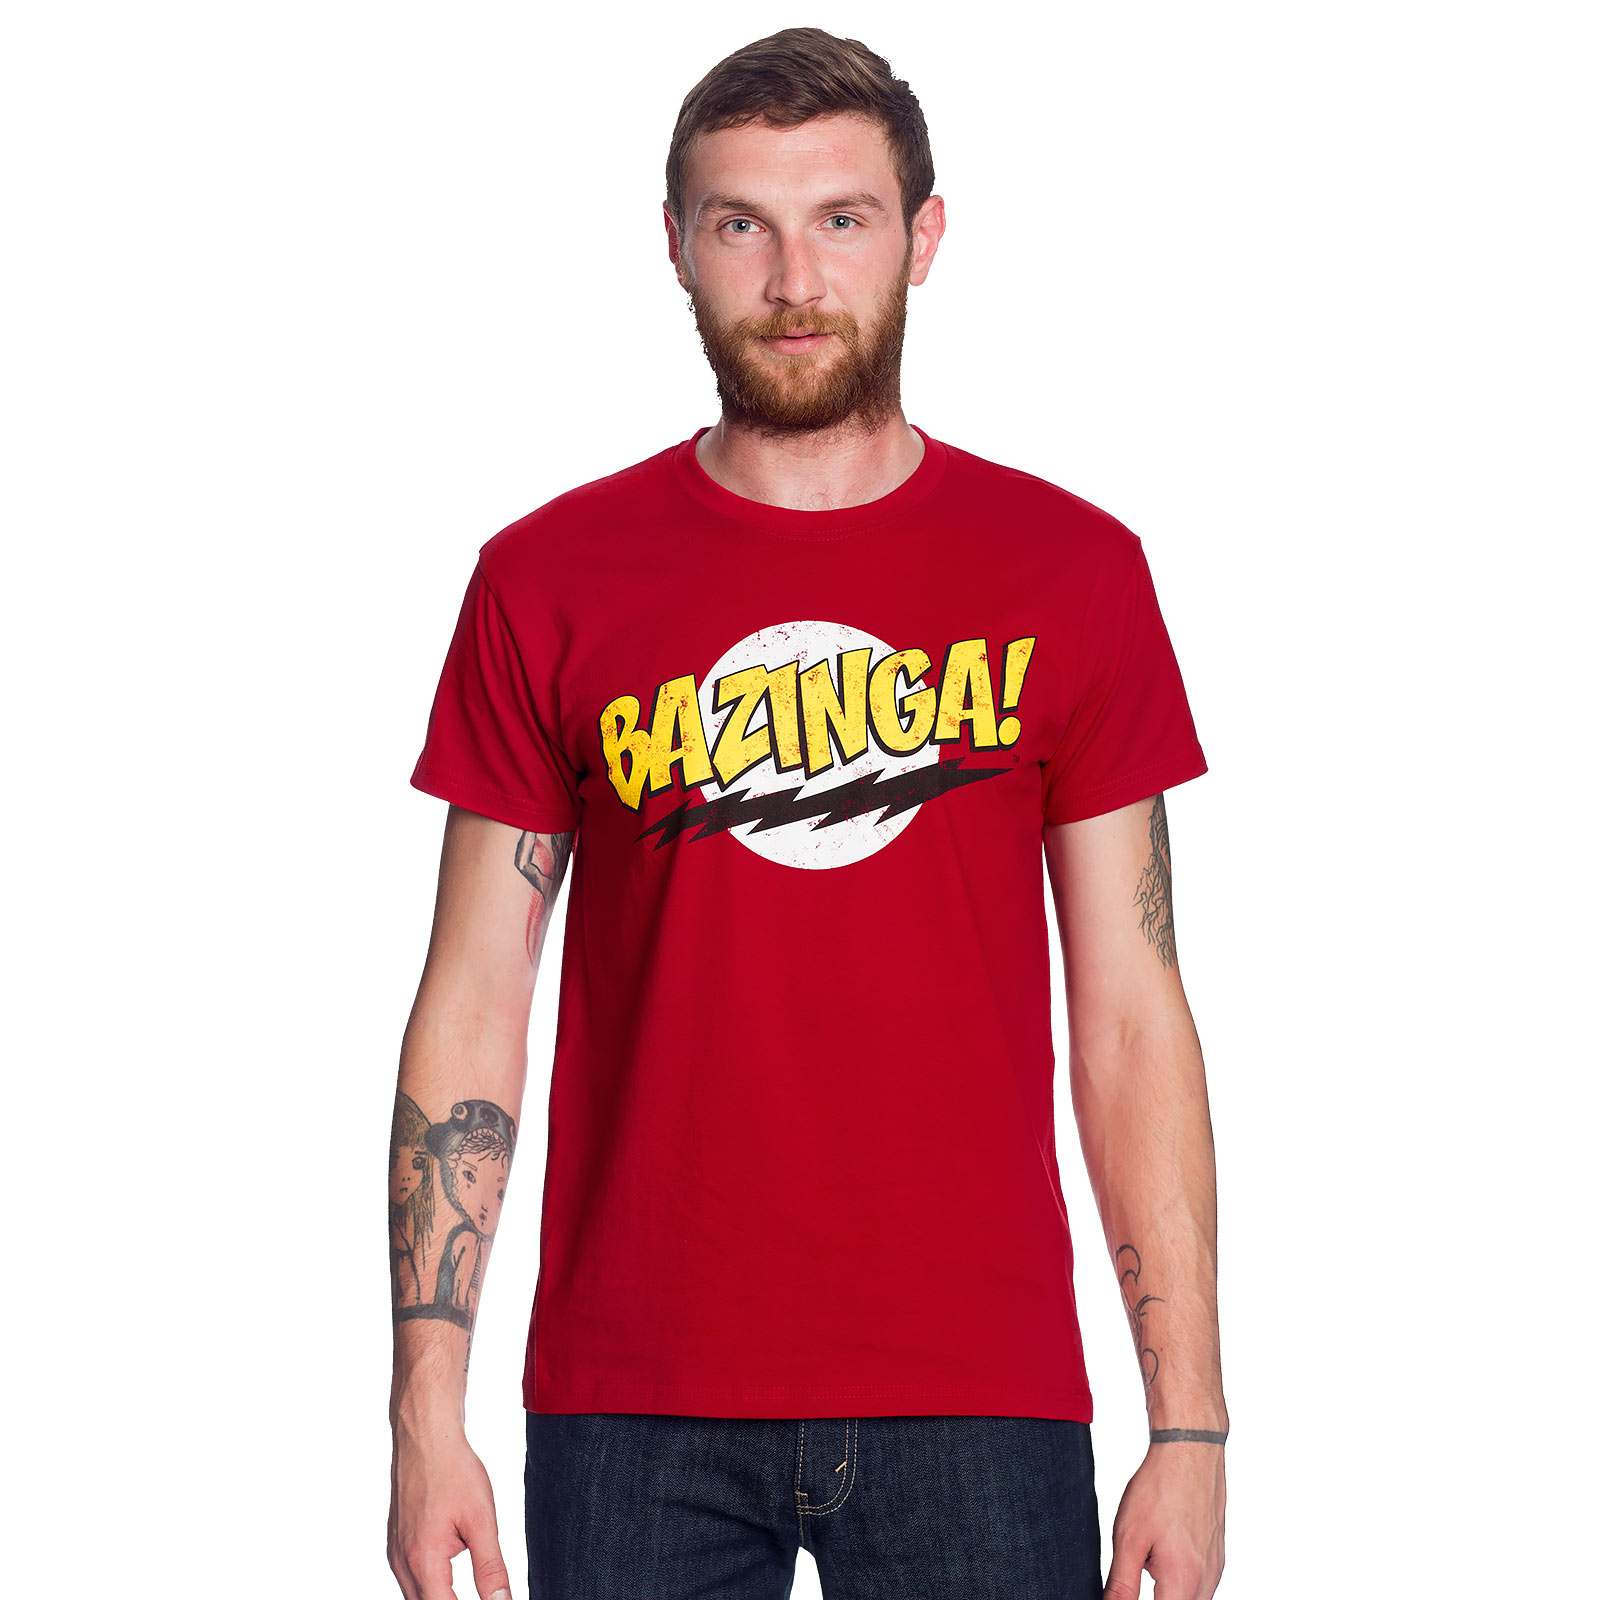 Big Bang Theory - Bazinga Full Size T-Shirt rot